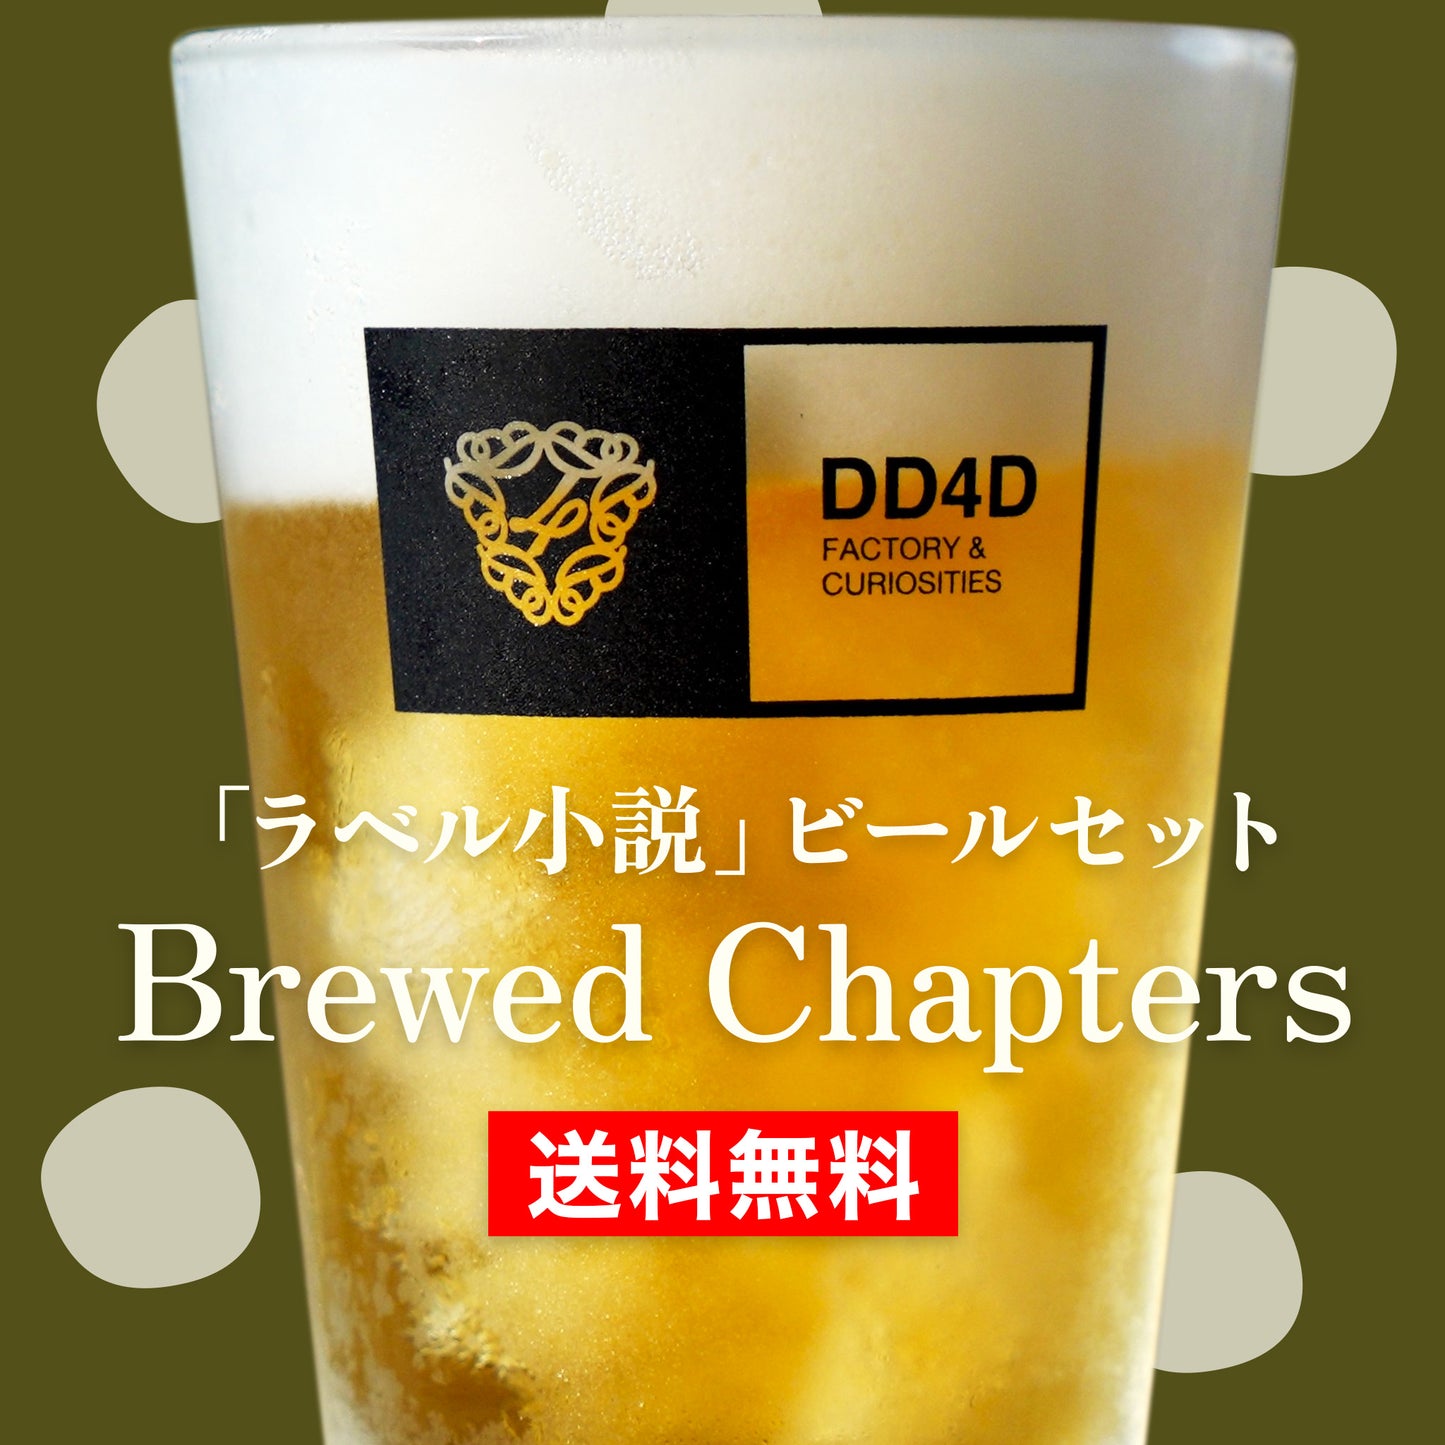 「ラベル小説」ビールセット "Brewed Chapters" | ショートショート作家 田丸雅智 × DD4D BREWING